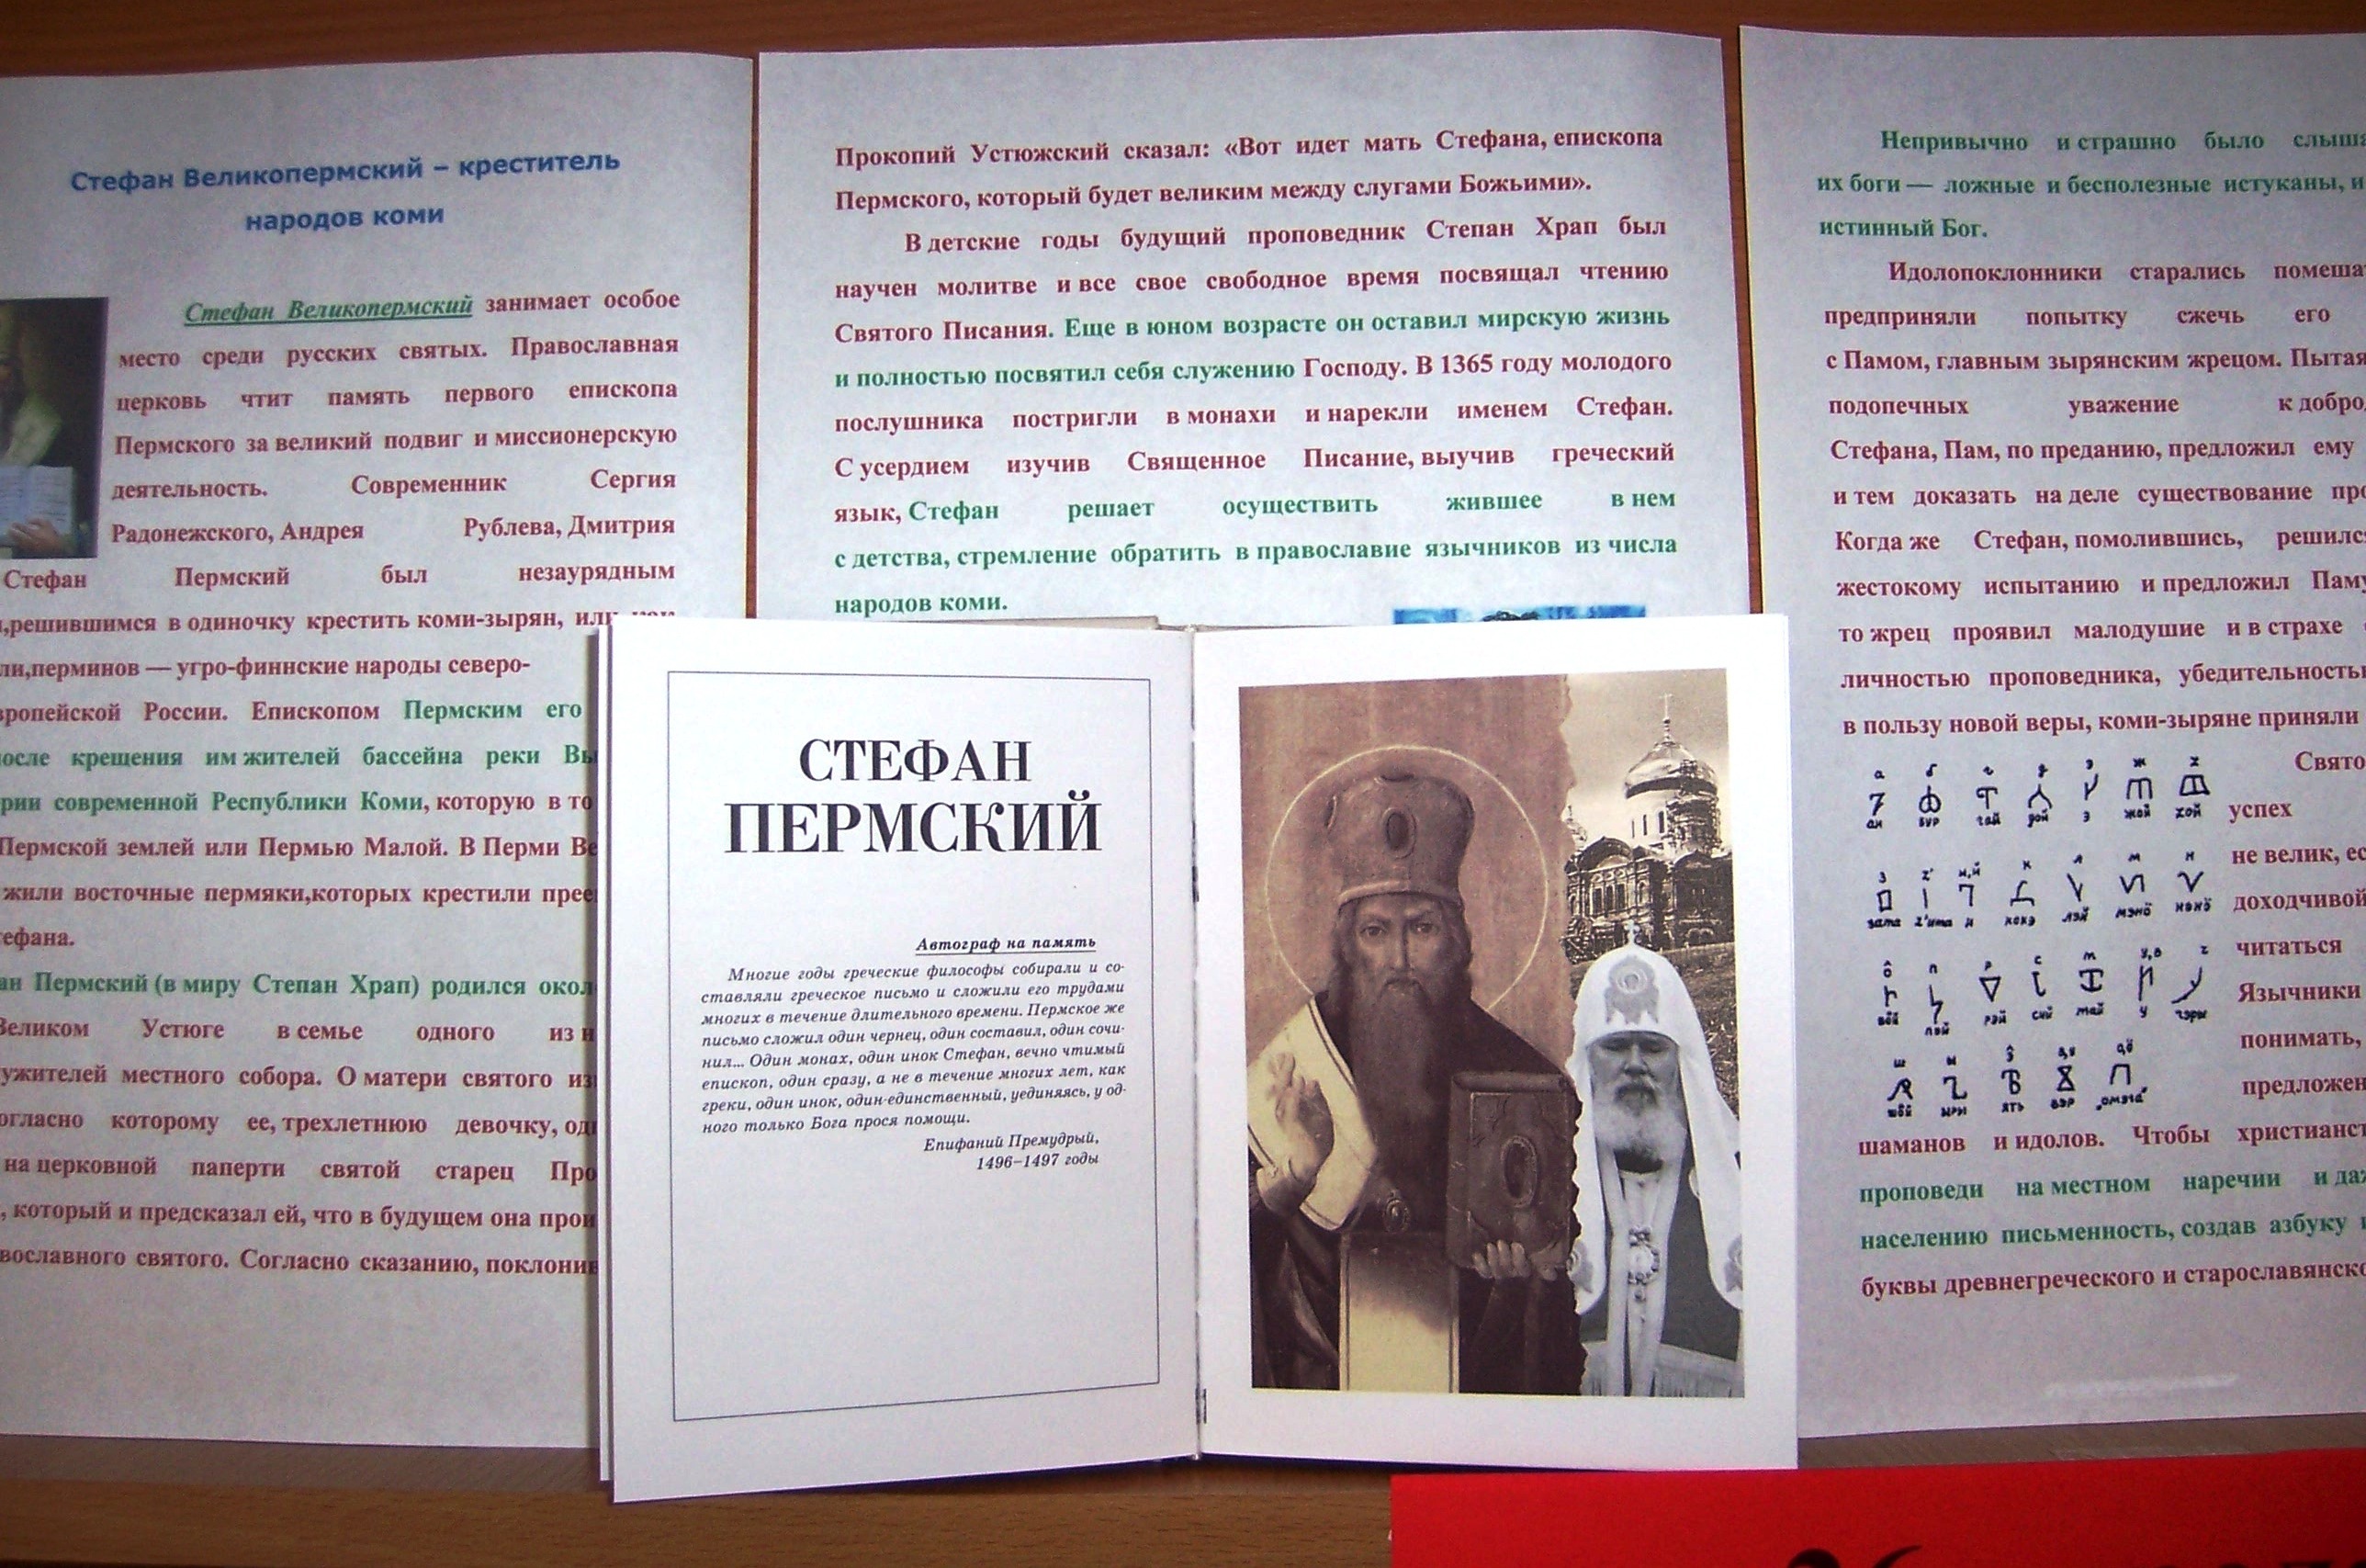 26 апреля - день памяти Стефана Пермского